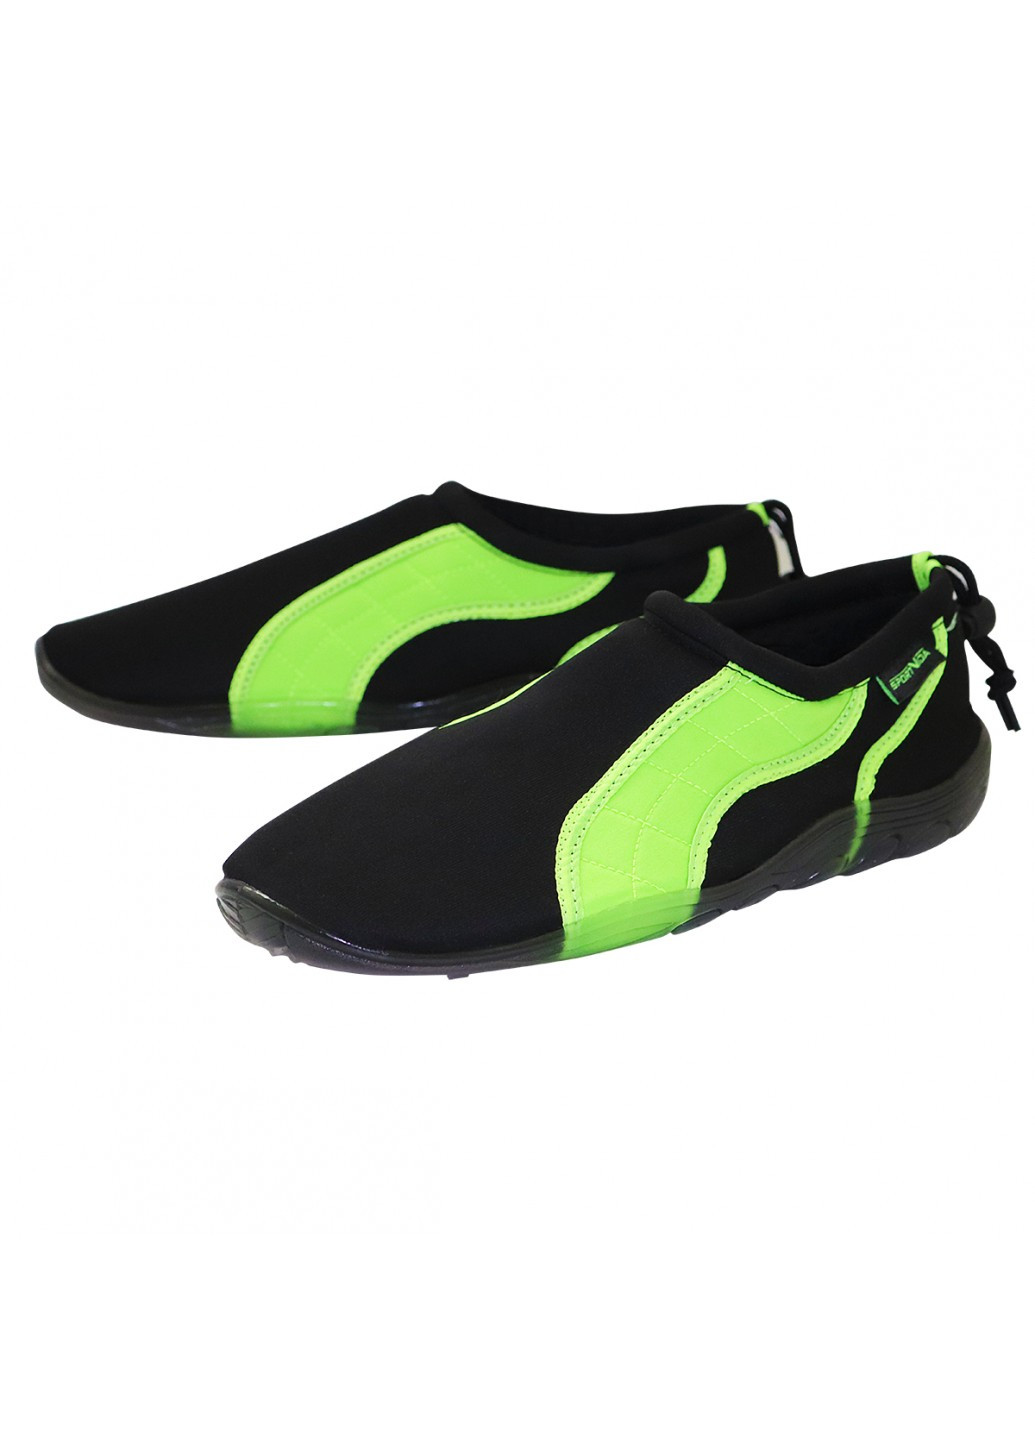 Взуття для пляжу і коралів (аквашузи) SportVida sv-gy0004-r45 (245081333)